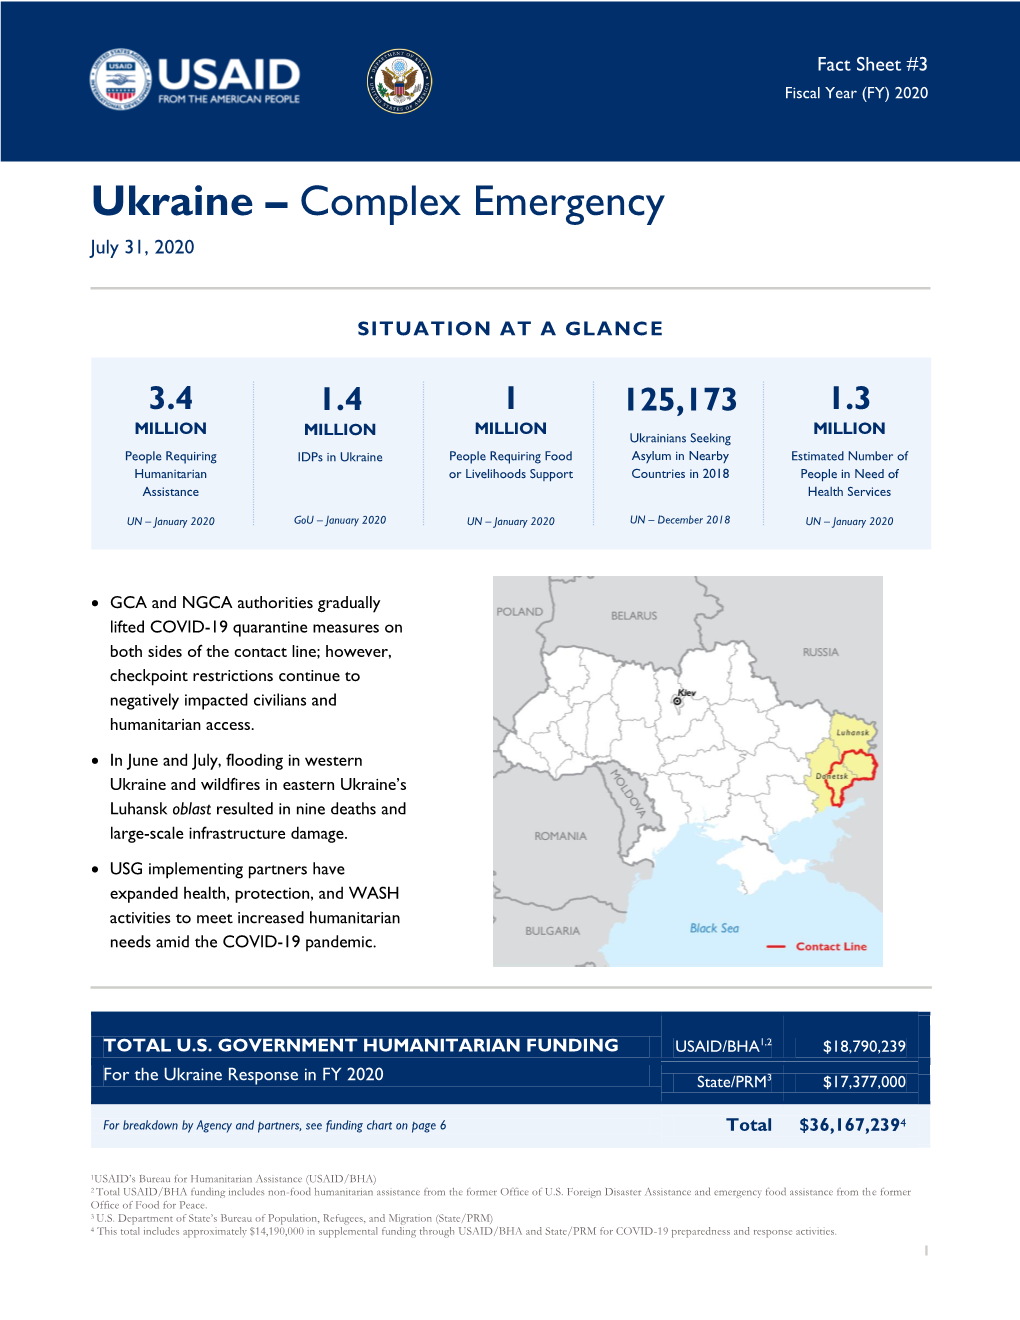 Ukraine – Complex Emergency July 31, 2020